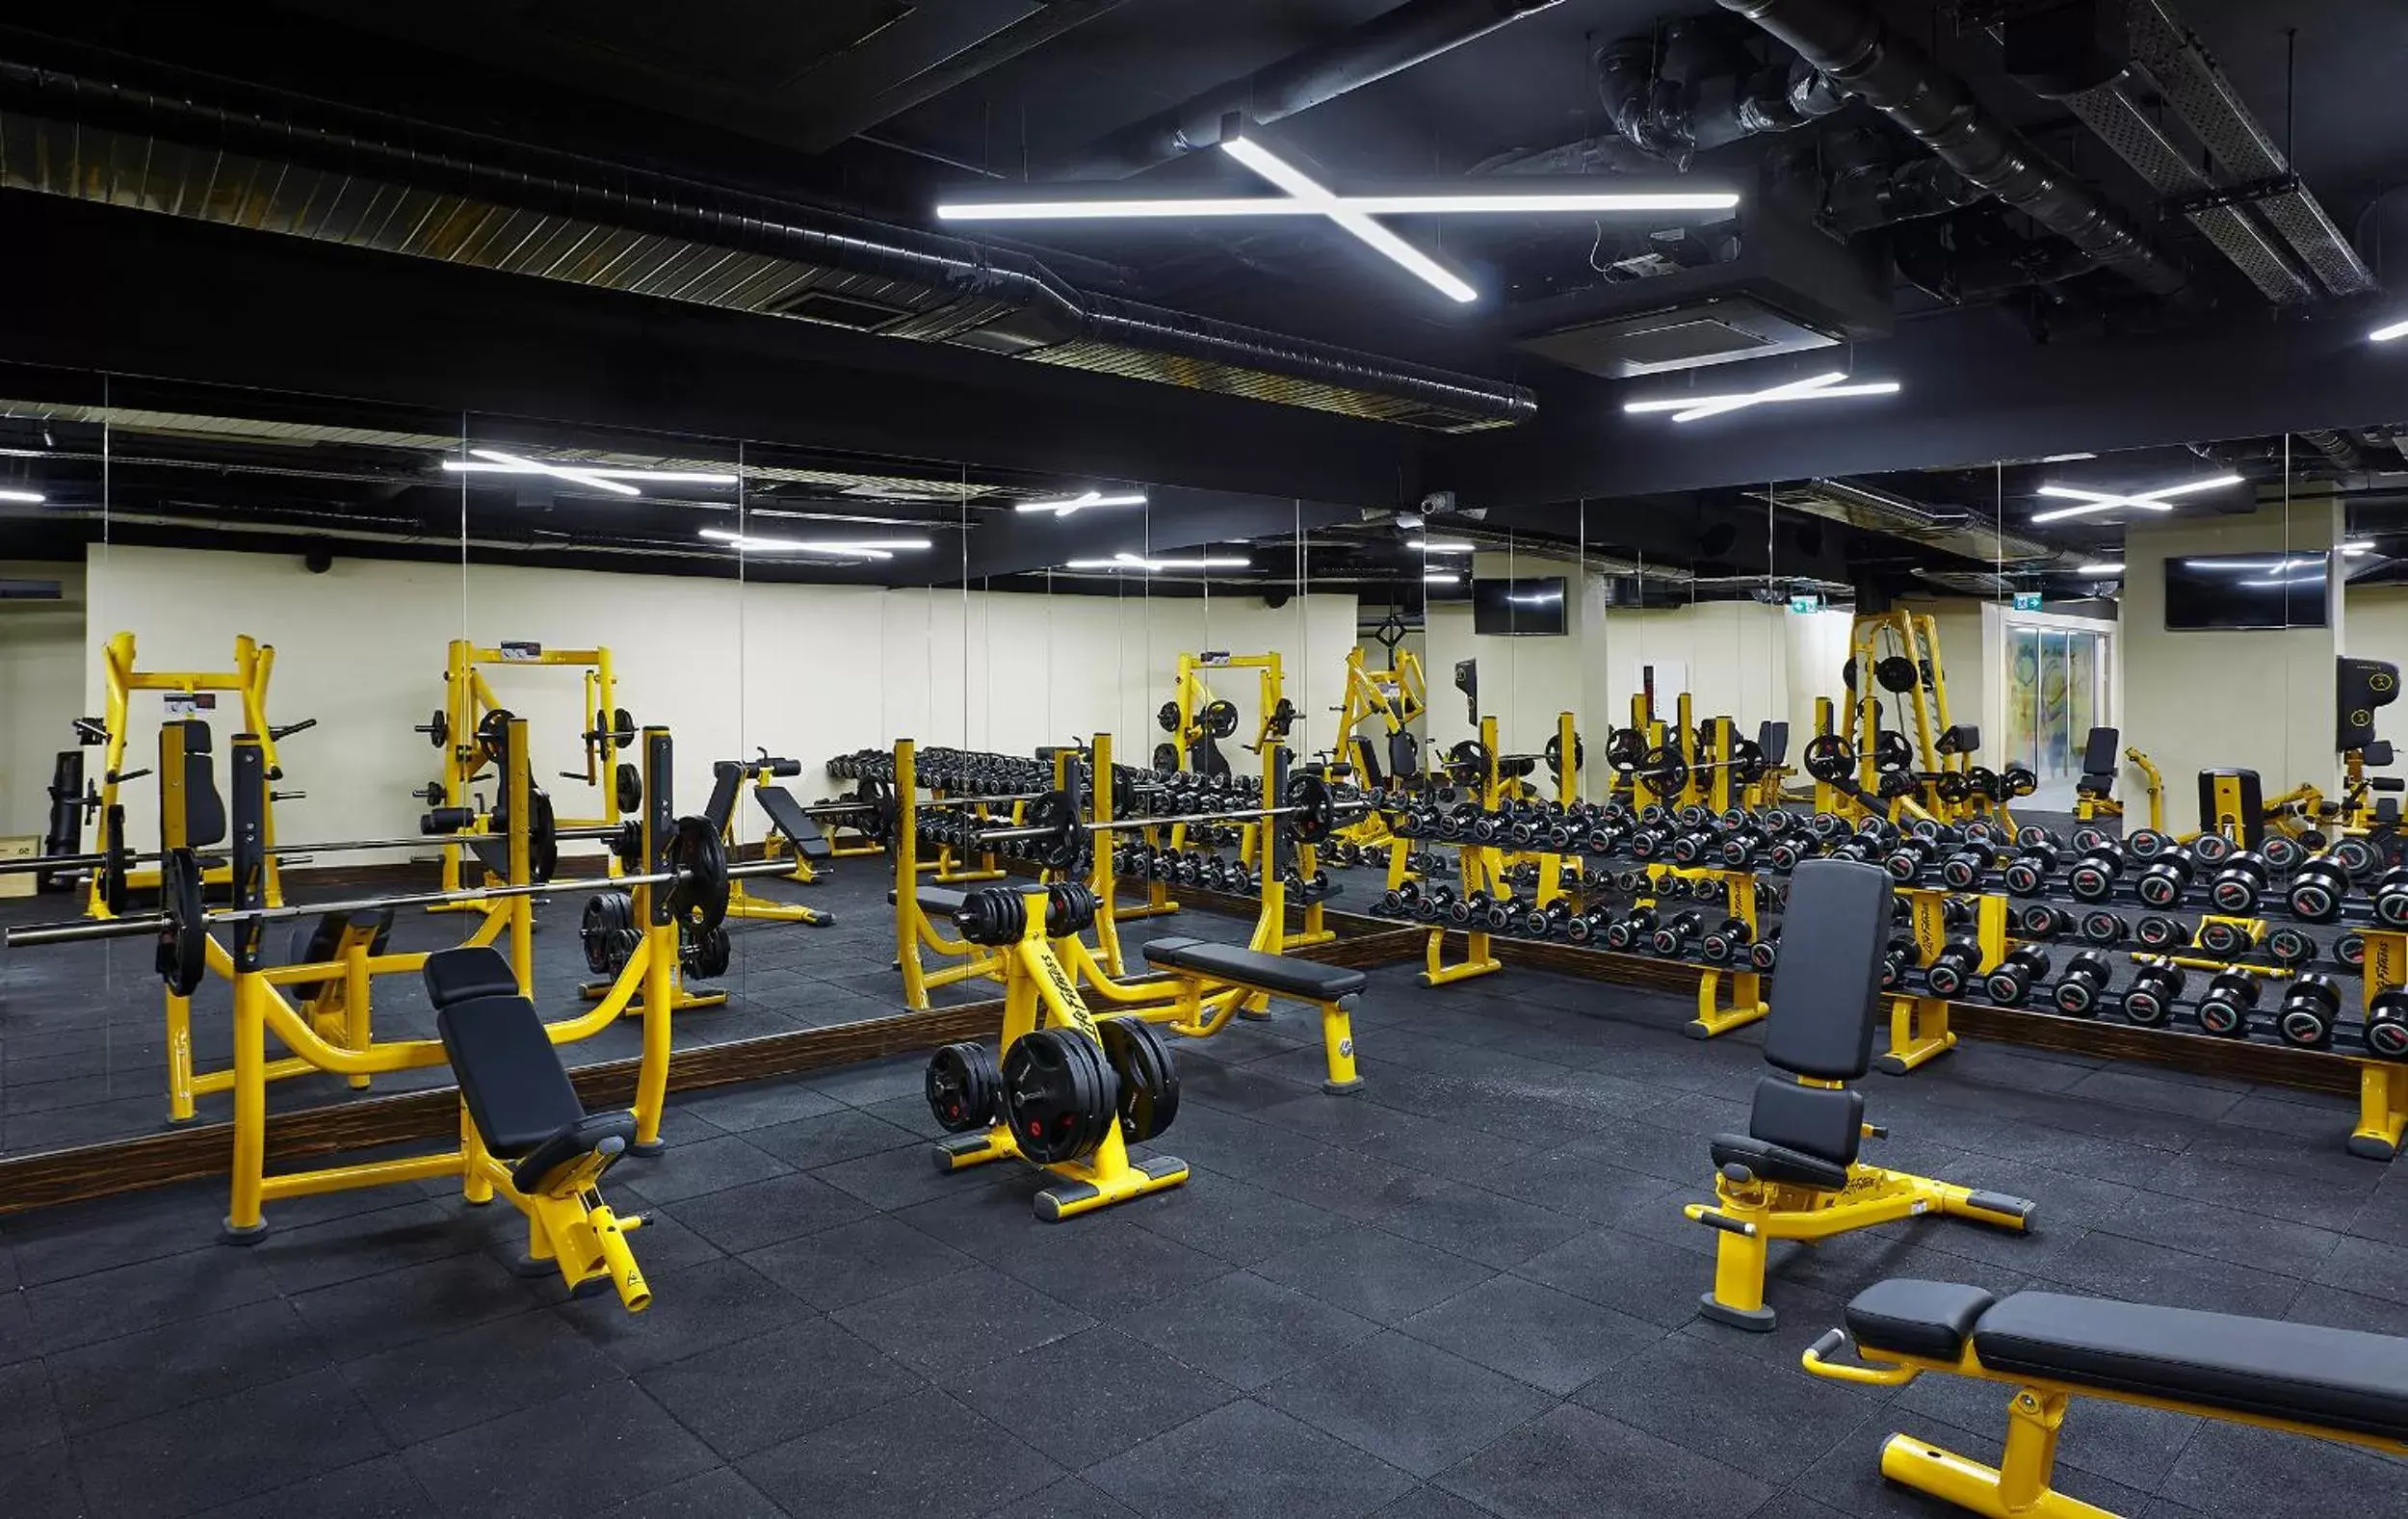 Fitness centre/facilities, Fitness Center/Facilities in Uranus Istanbul Topkapi